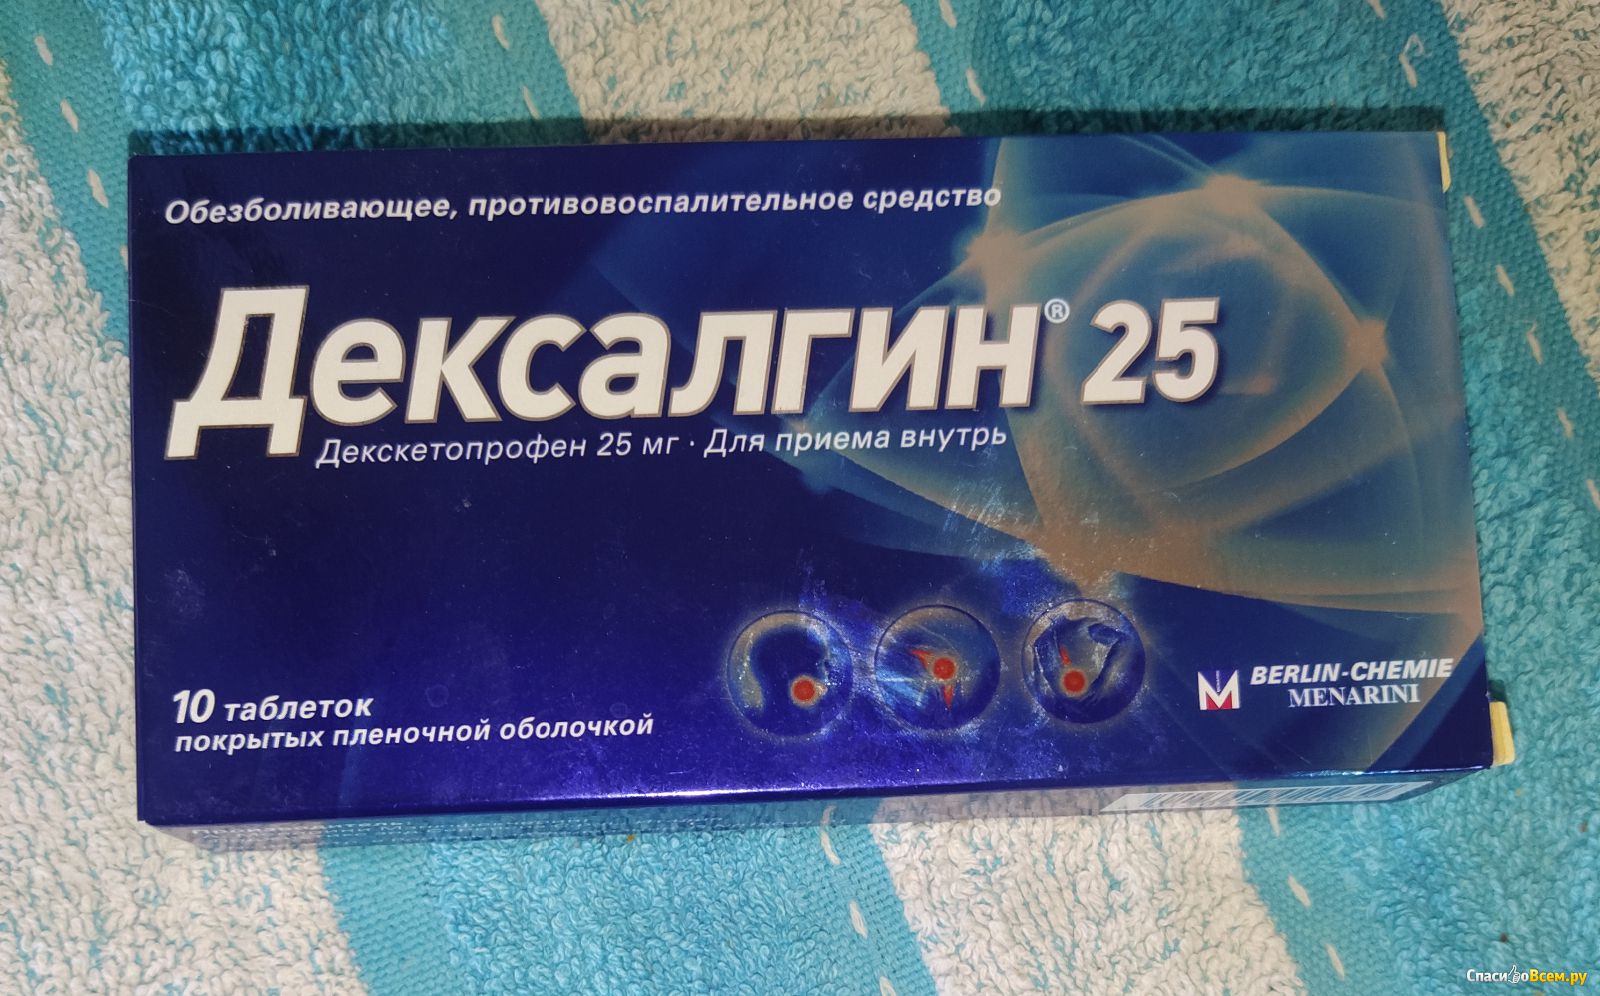 Сильные обезболивающие таблетки после. Обезболивающие таблетки дексалгин. Дексалгин 25 таблетки красная упаковка.